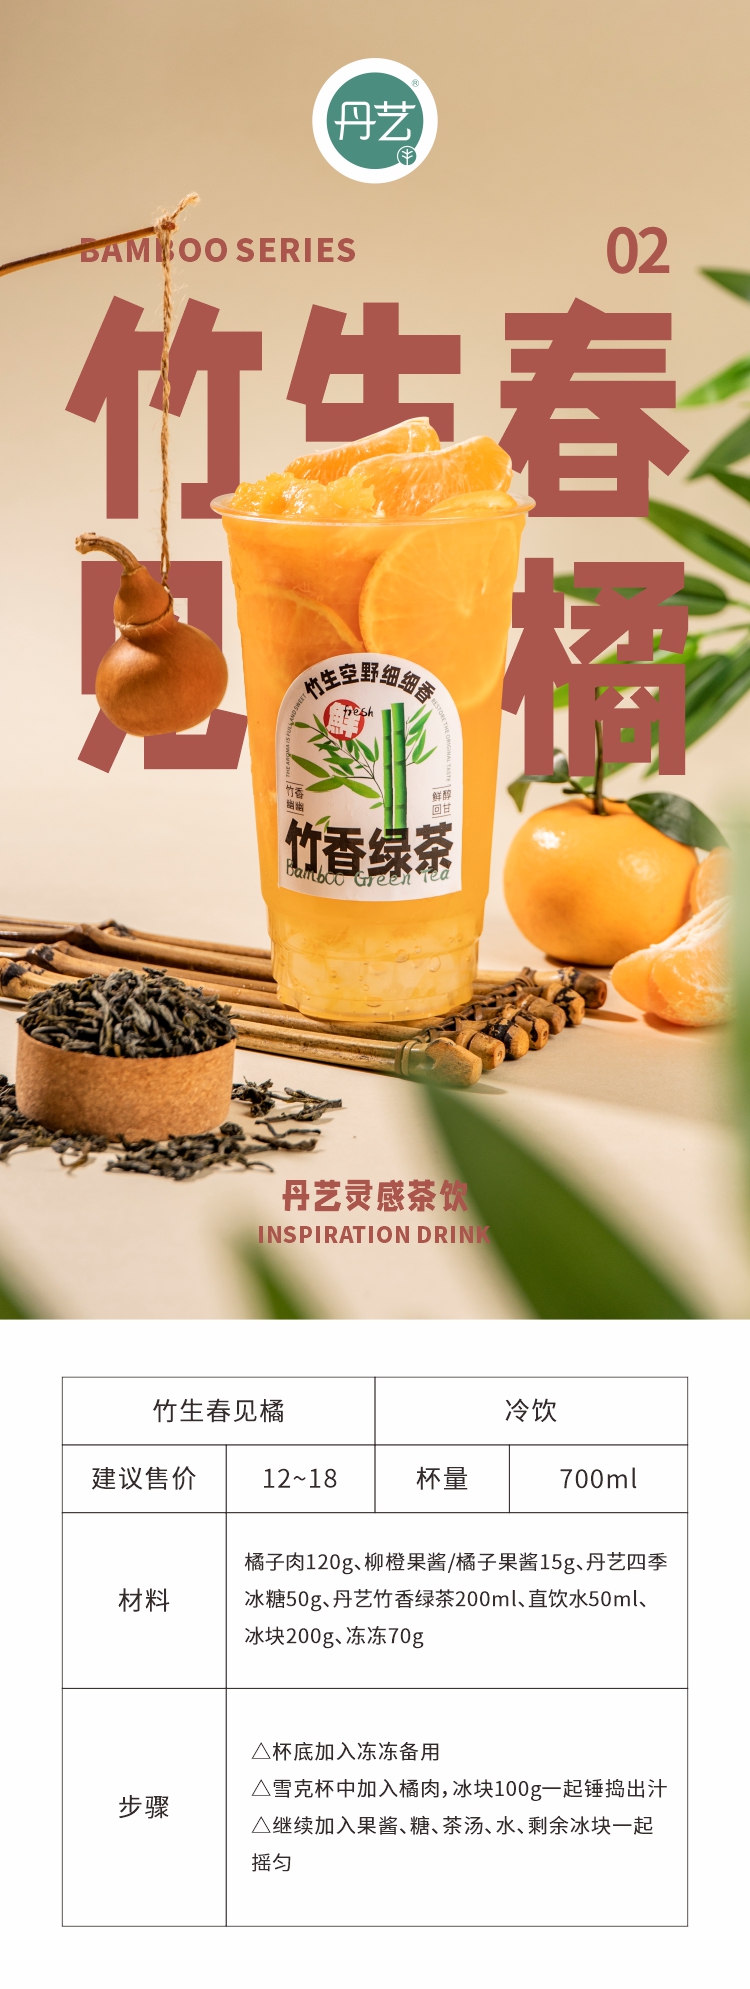 丹艺竹香甜润茉莉绿茶500g